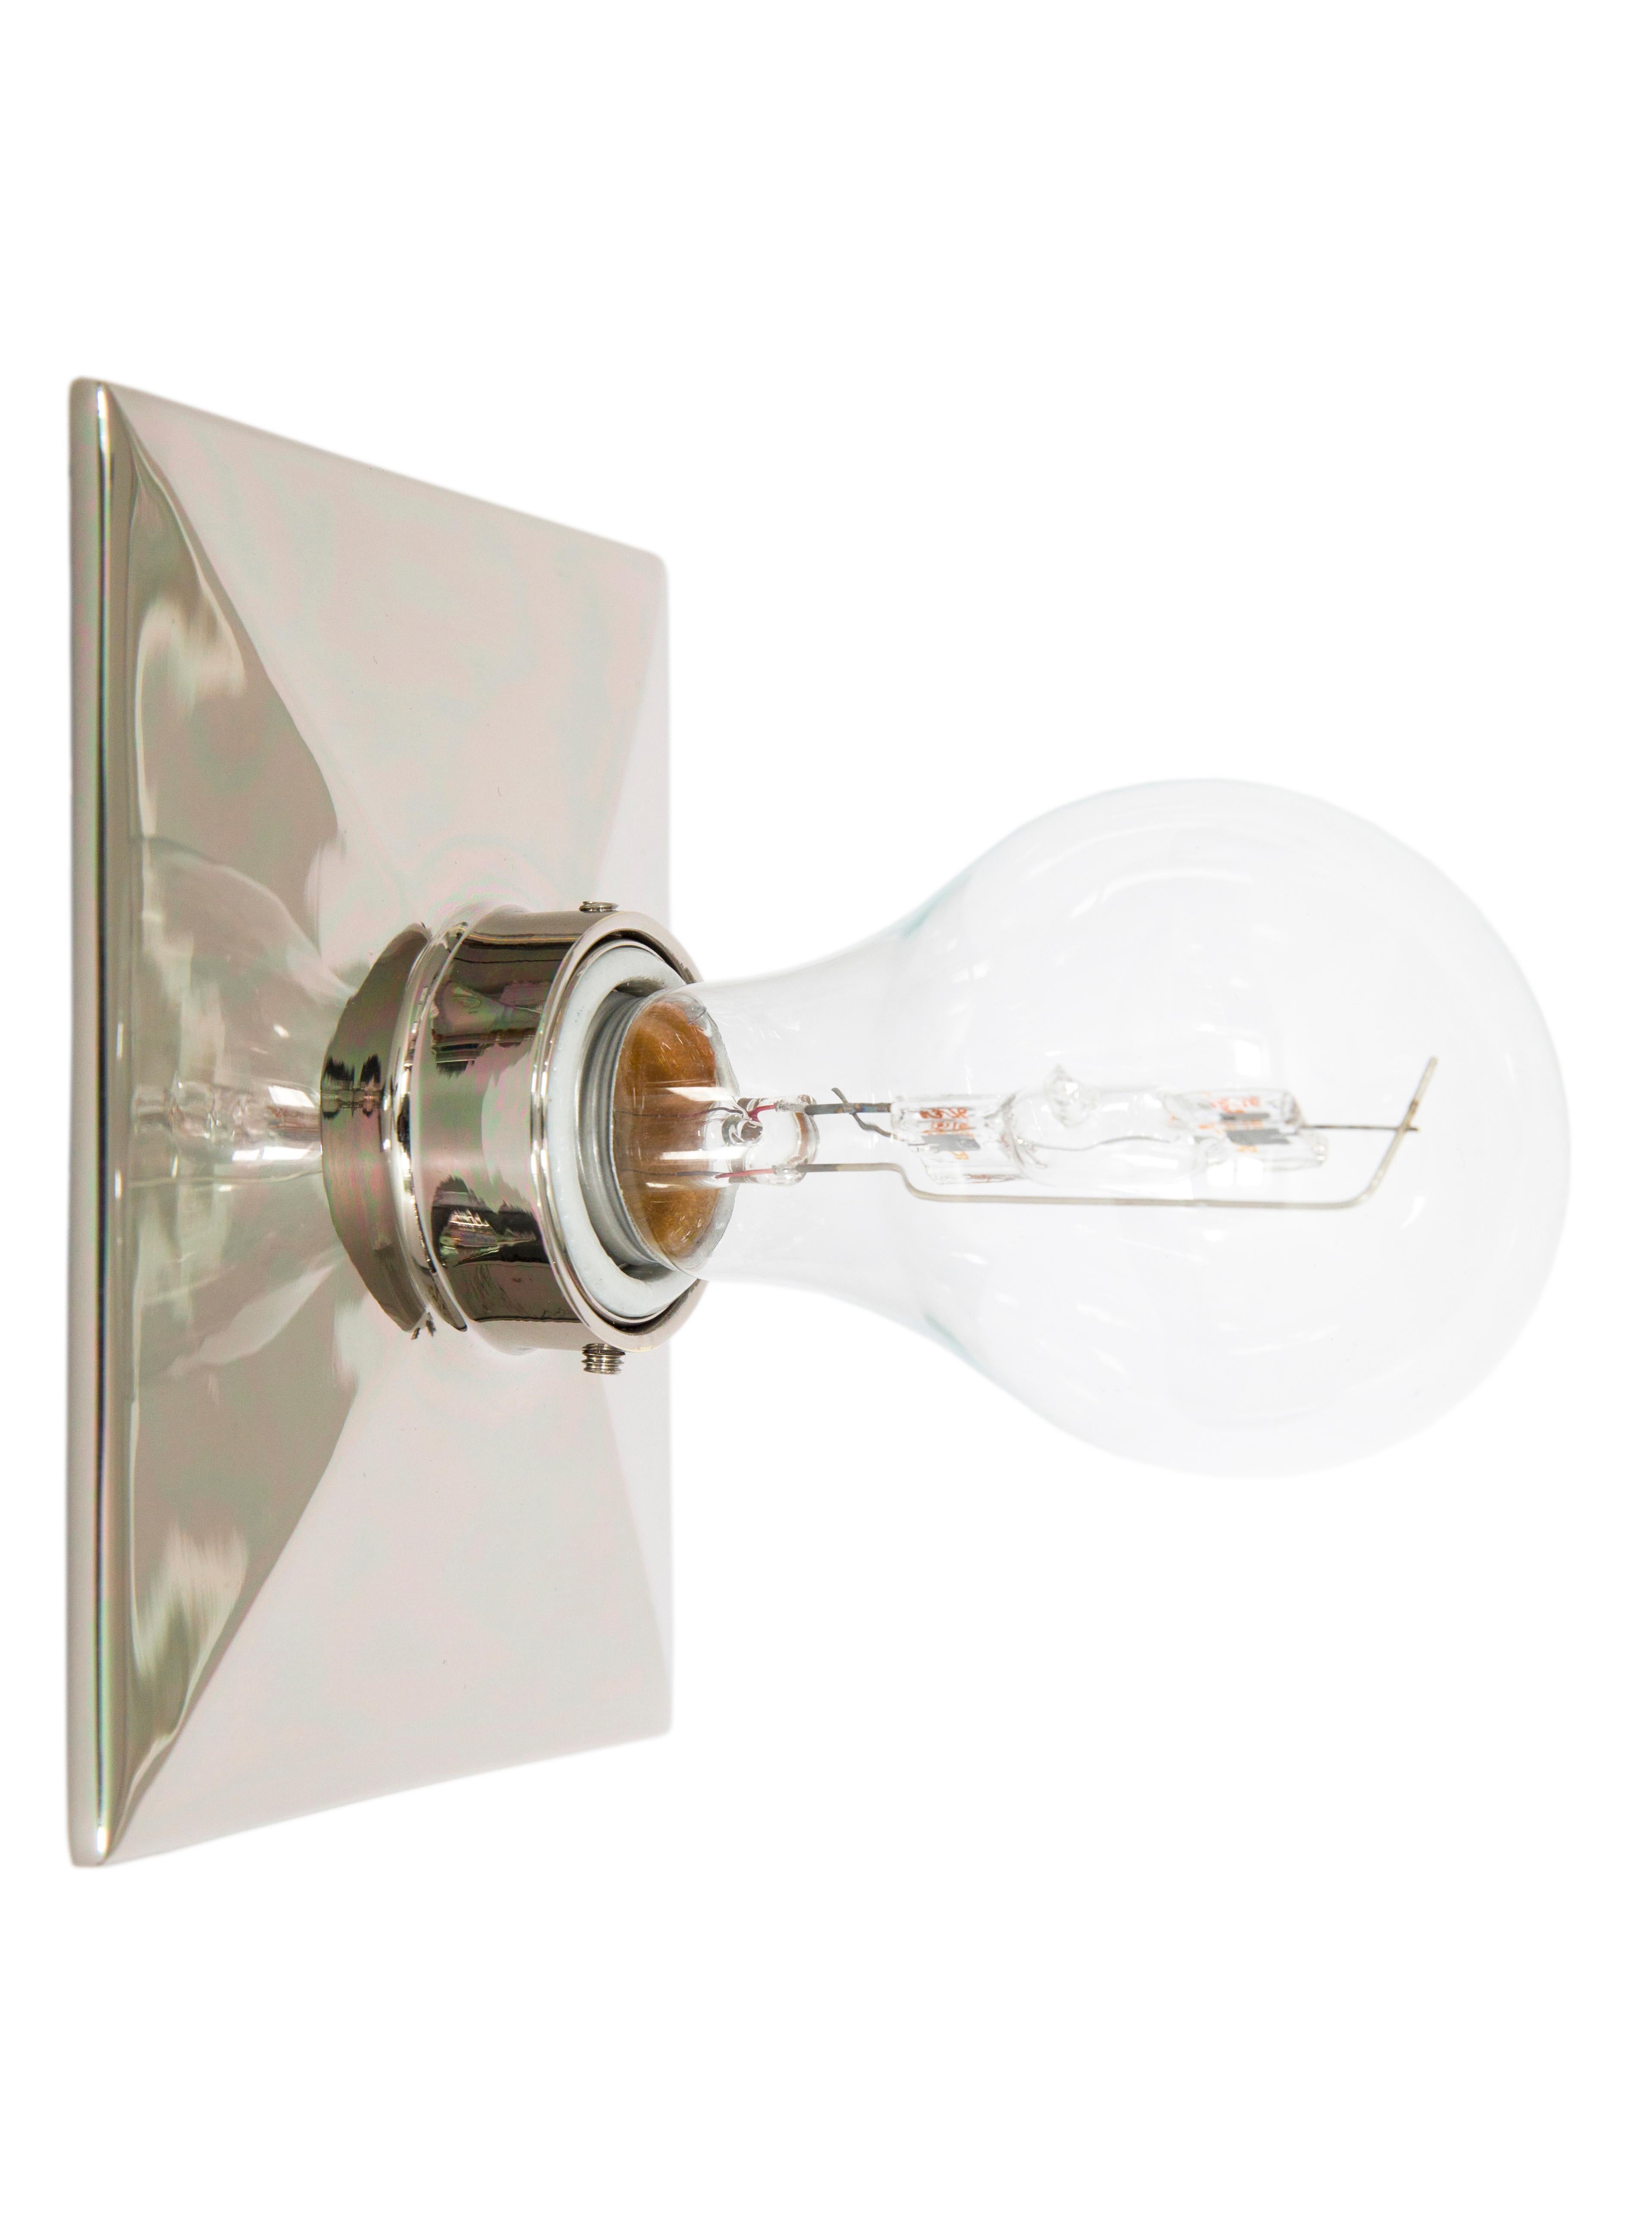 Le Vica Light est une plaque d'encastrement rectangulaire en métal moulé avec un bord biseauté et une douille en porcelaine. Le luminaire peut être fixé au mur ou au plafond. 

La puissance maximale recommandée est de 60 W. La lampe Vica est